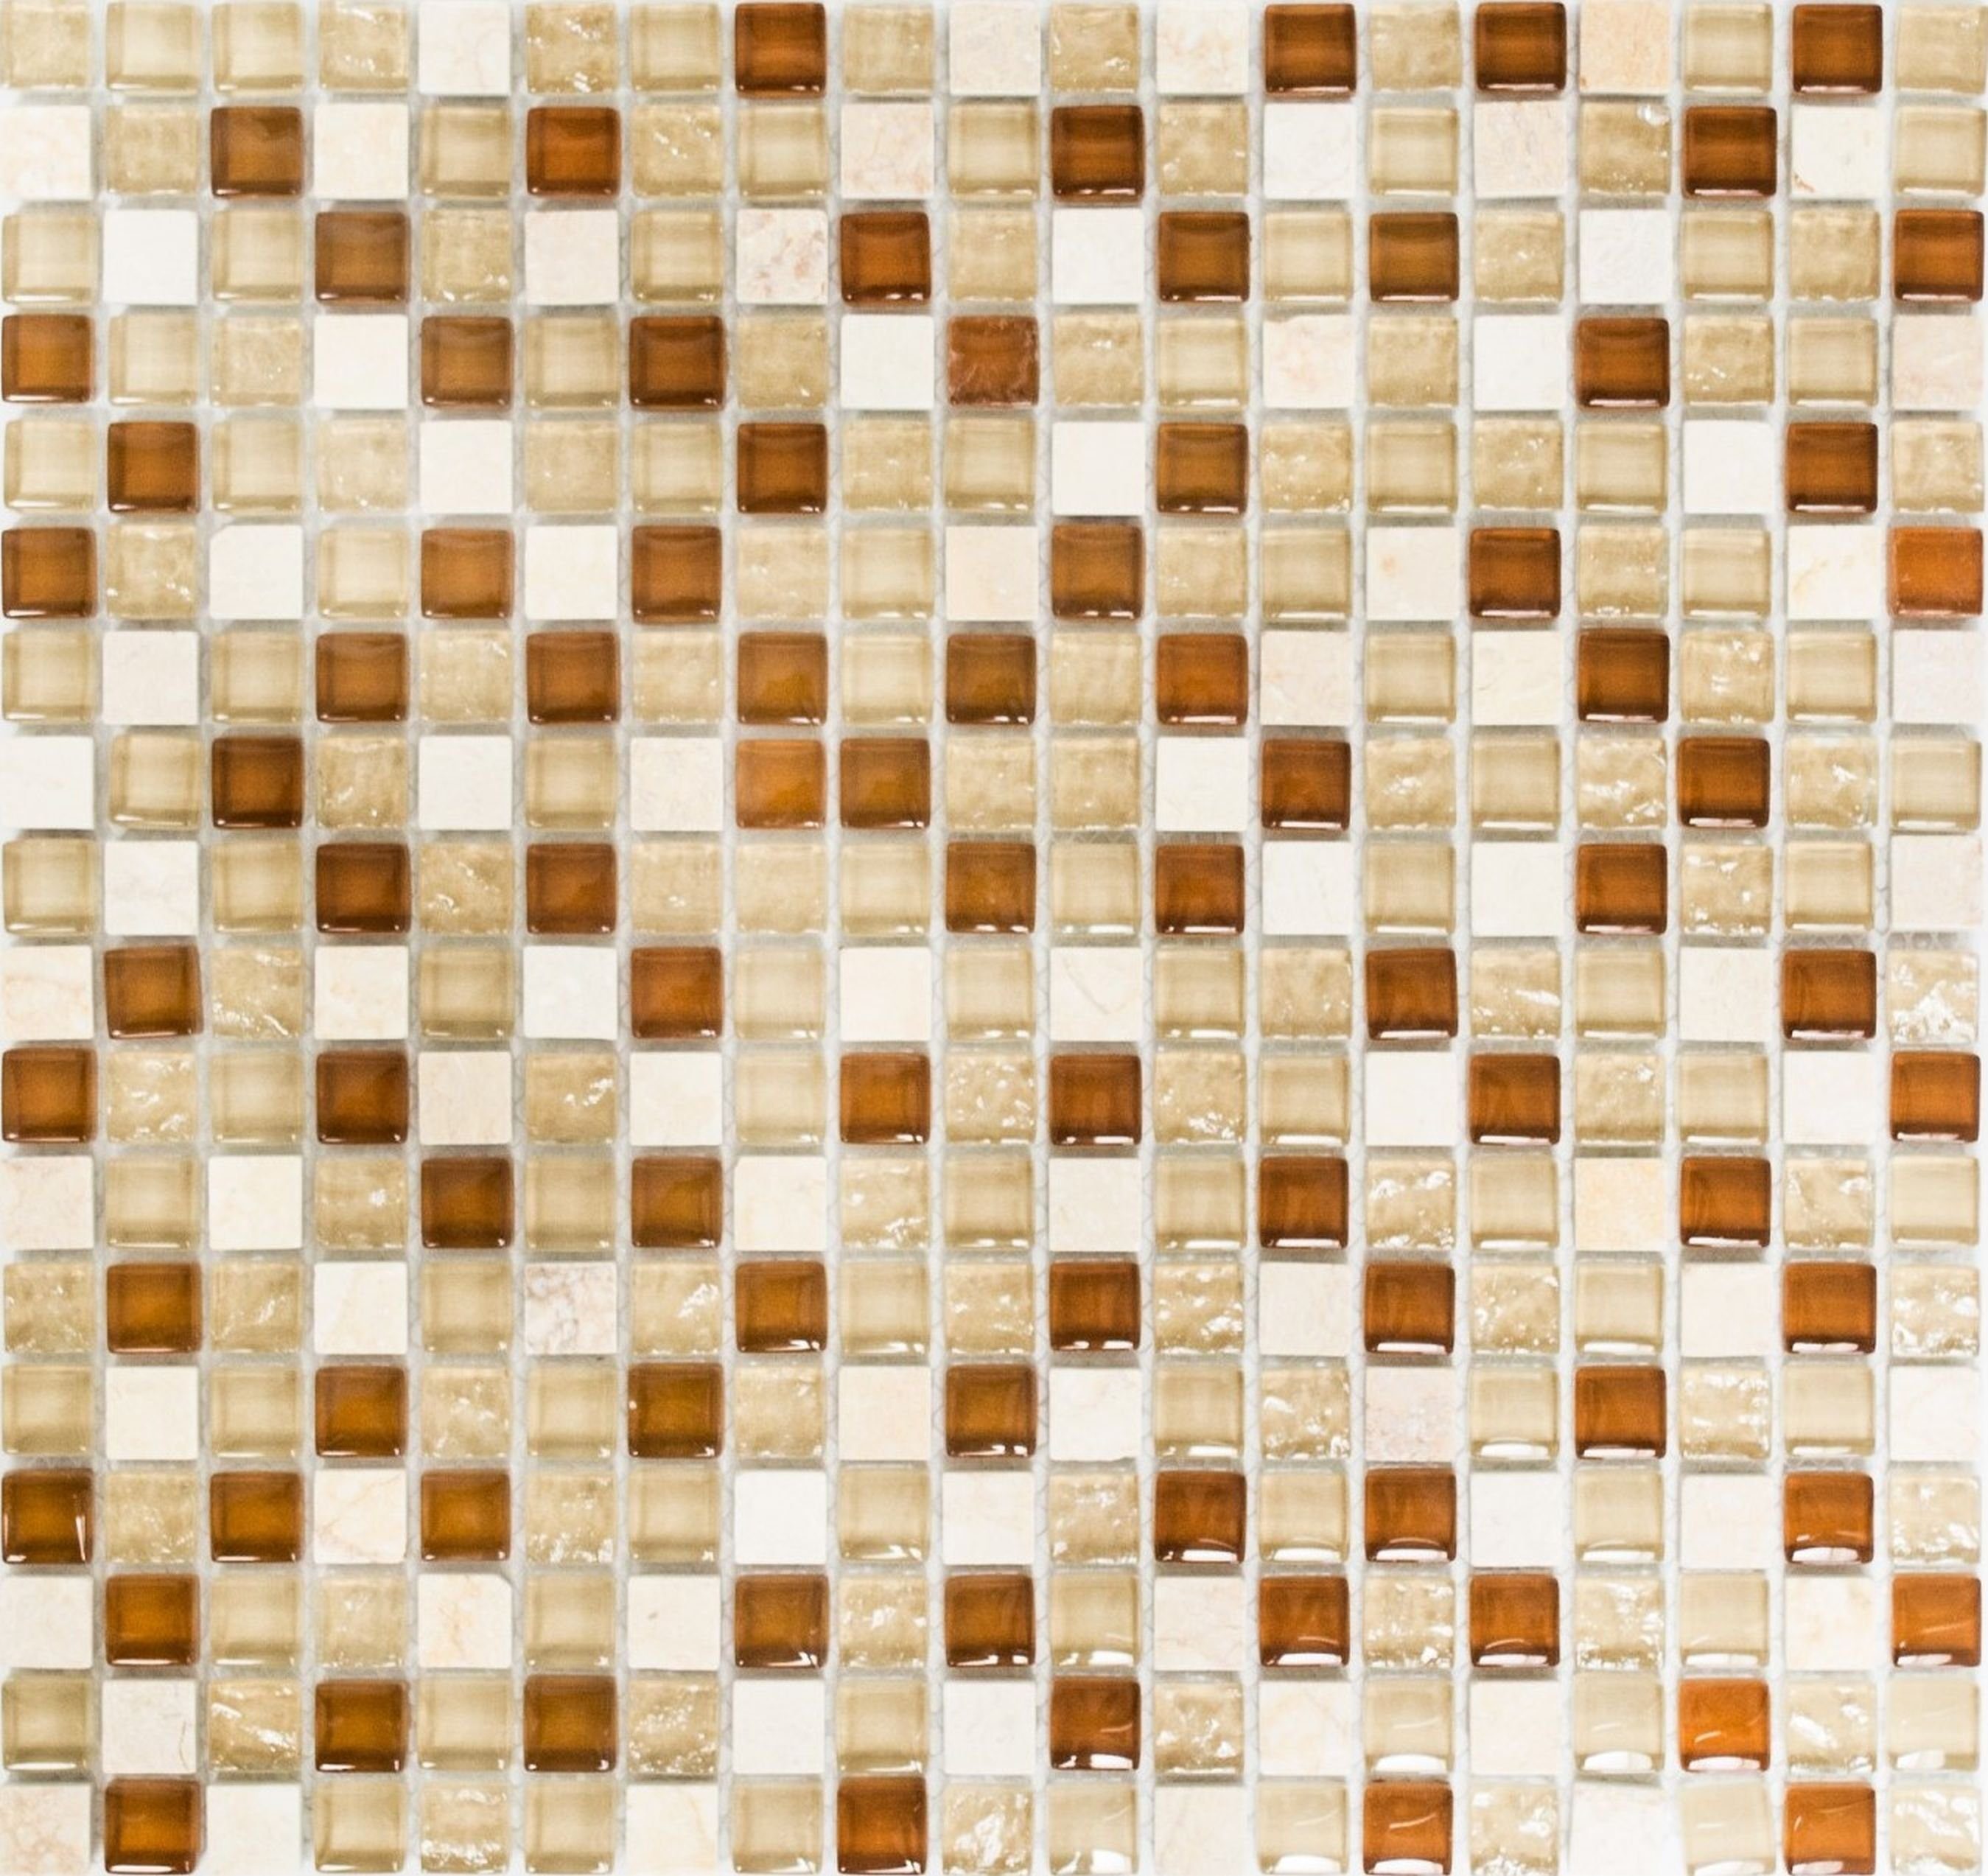 Mosani Mosaikfliesen Glasmosaik Naturstein Mosaikfliese beige creme ockerbraun